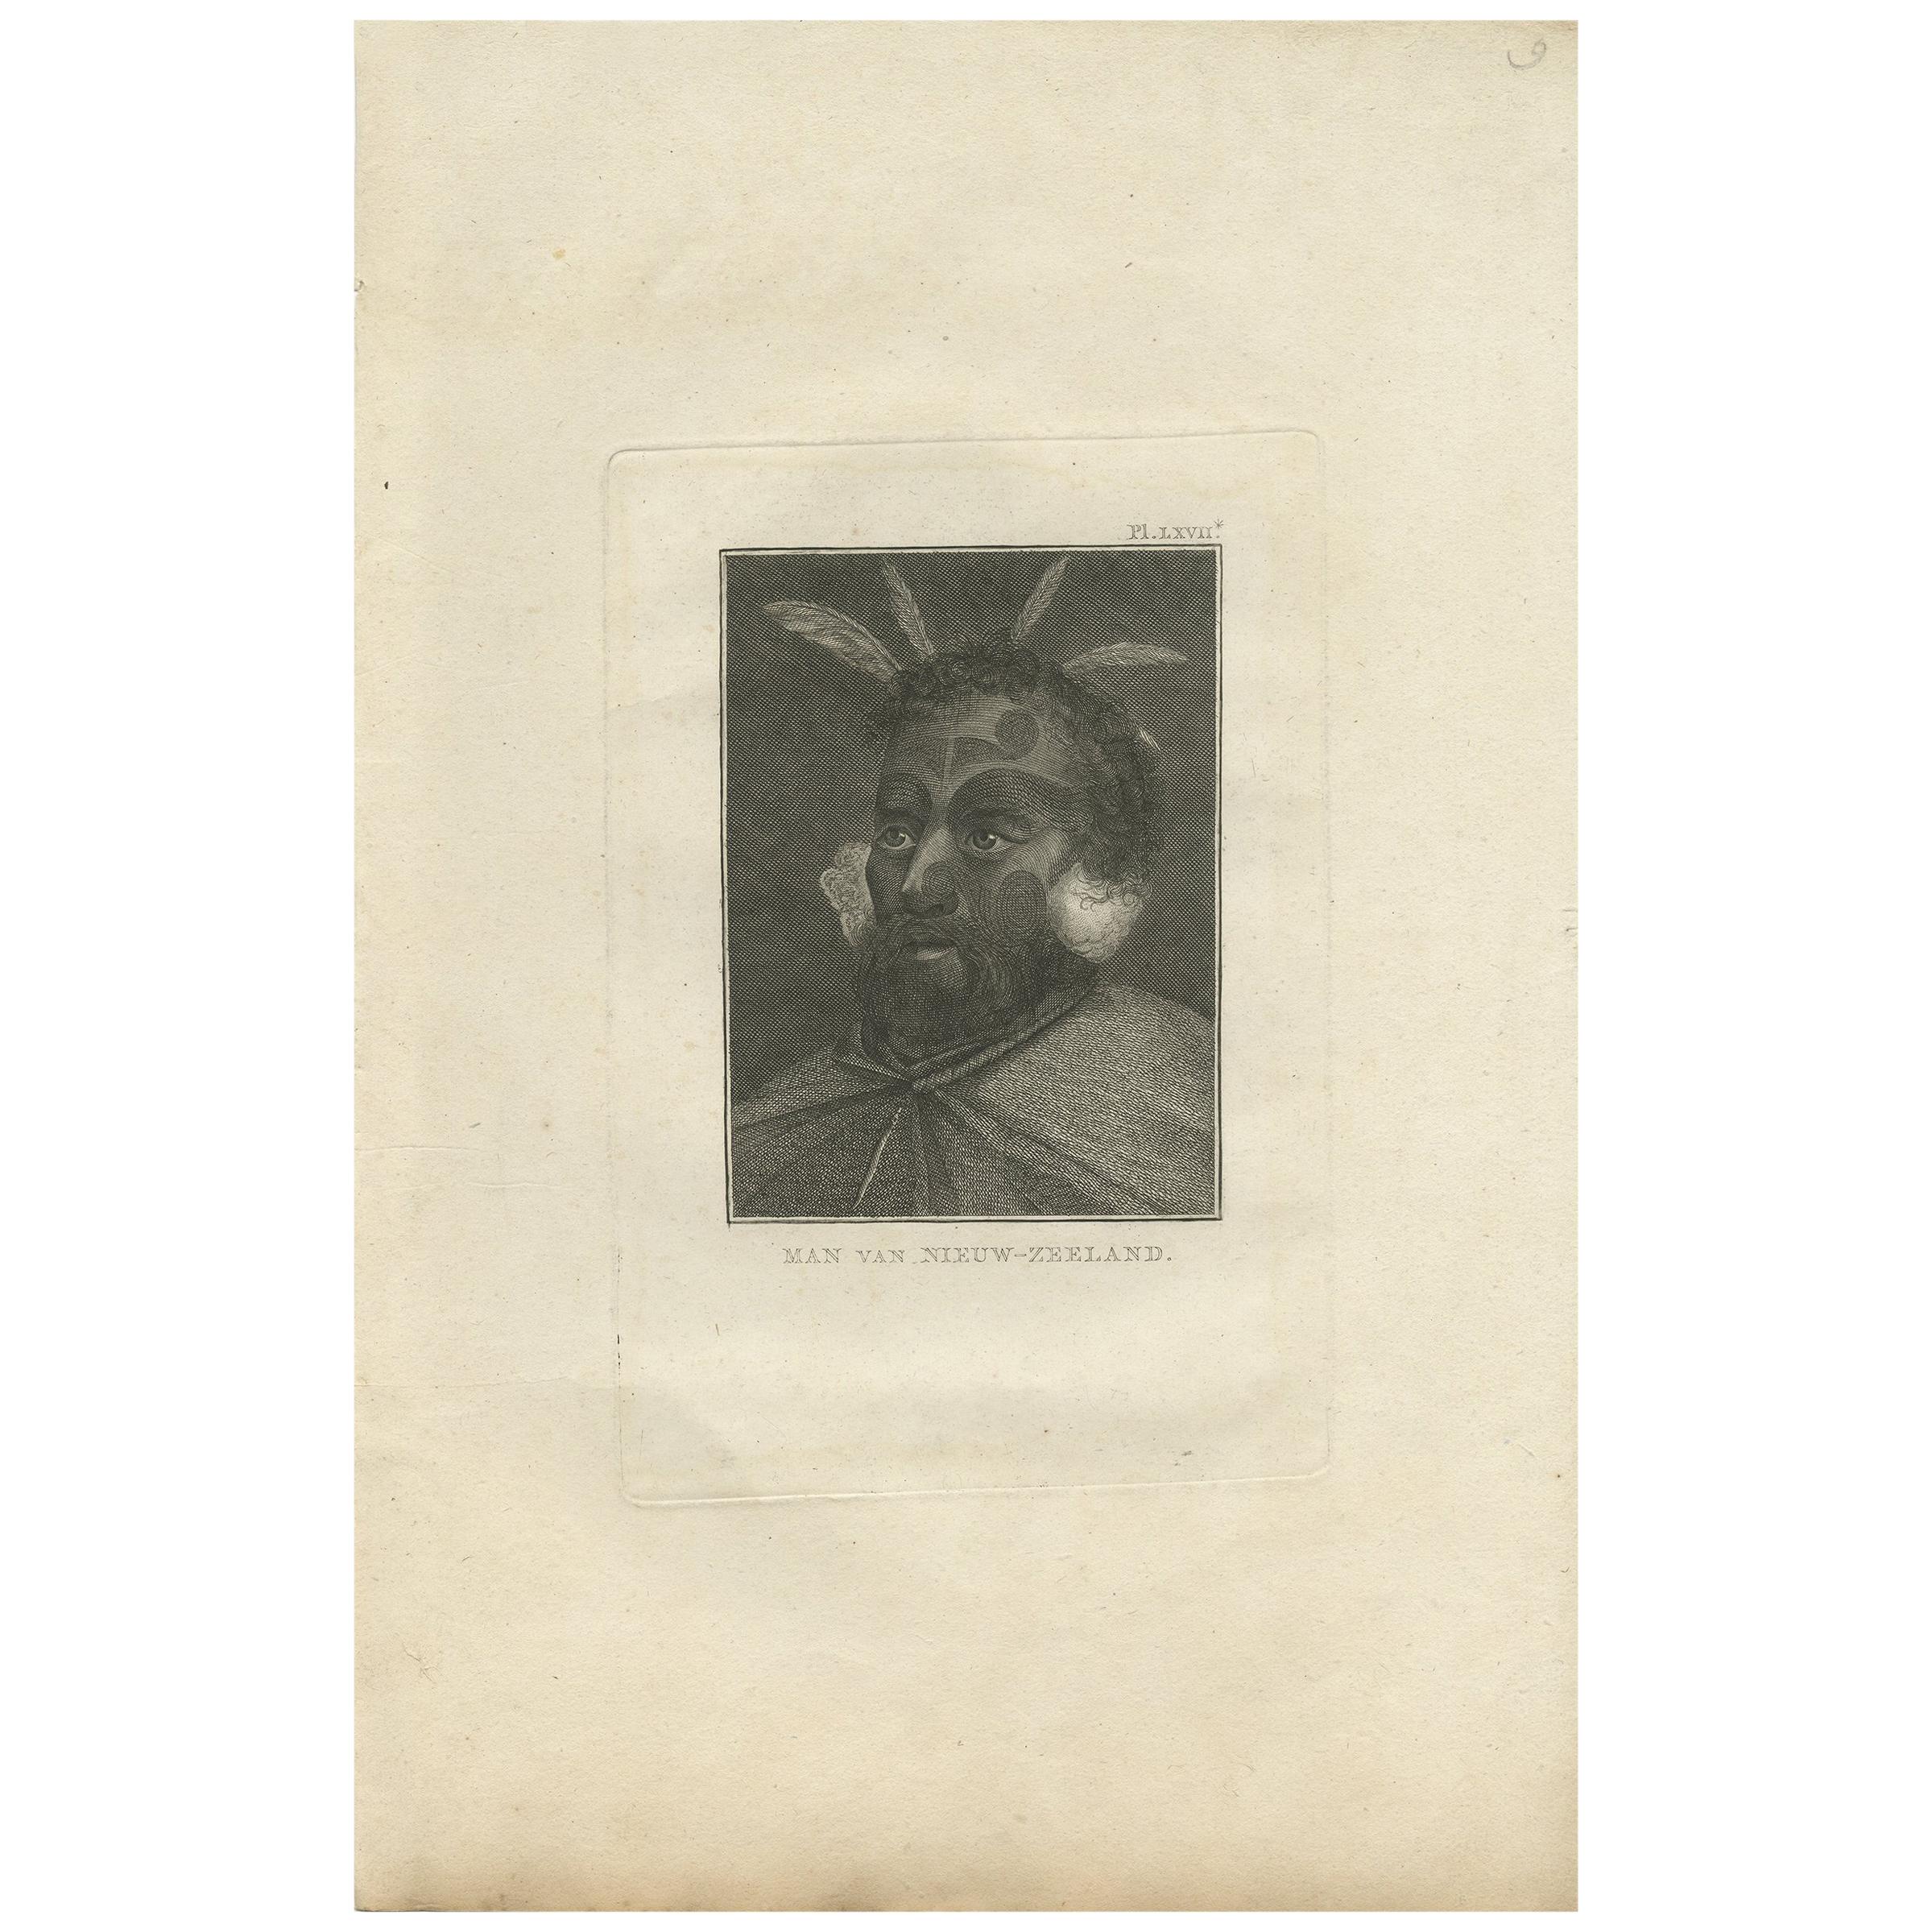 Antique print titled 'Man van Nieuw-Zeeland'. This print depicts a man of New Zealand. Originates from 'Reizen rondom de Waereld' by J. Cook. Translated by J.D. Pasteur. Published by Honkoop, Allart en Van Cleef.